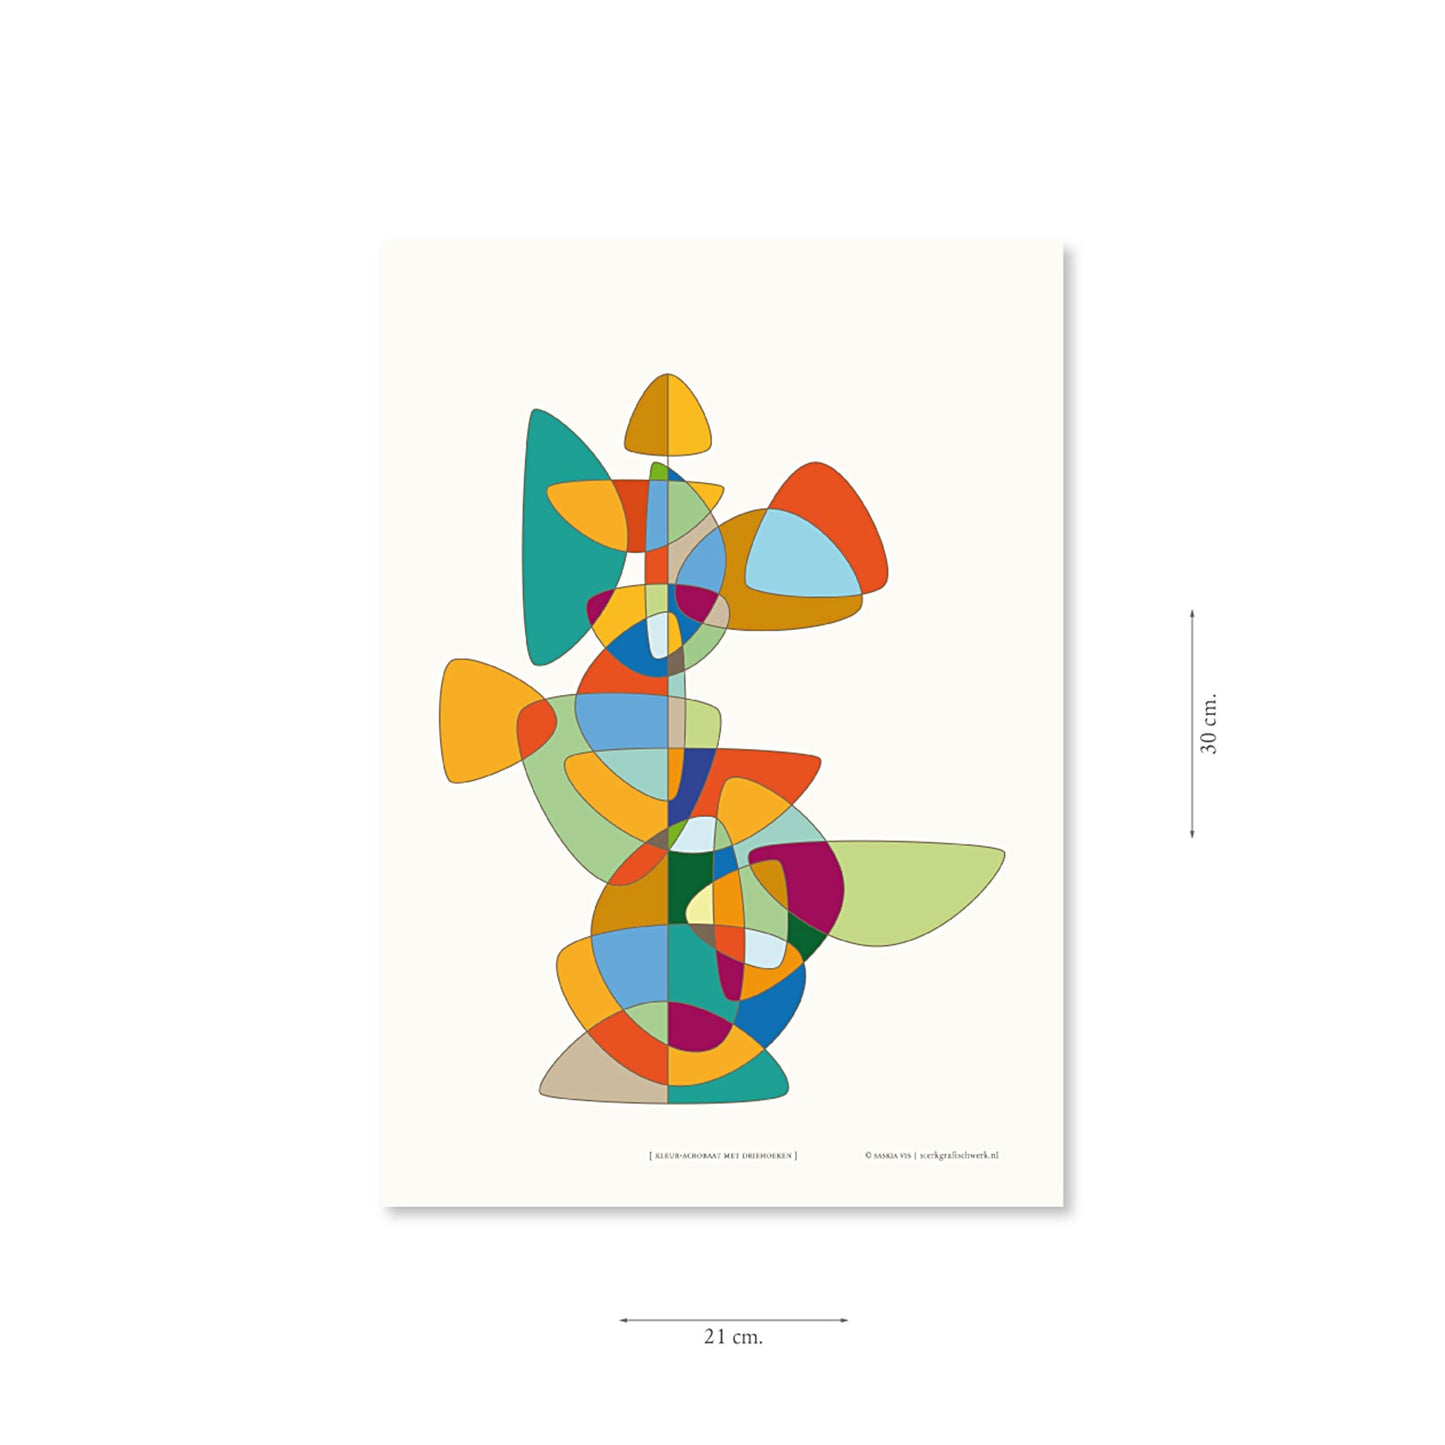 Productafbeelding poster "kleur-acrobaat met driehoeken" met aanduiding van het formaat erop weergegeven 21 x 30 cm